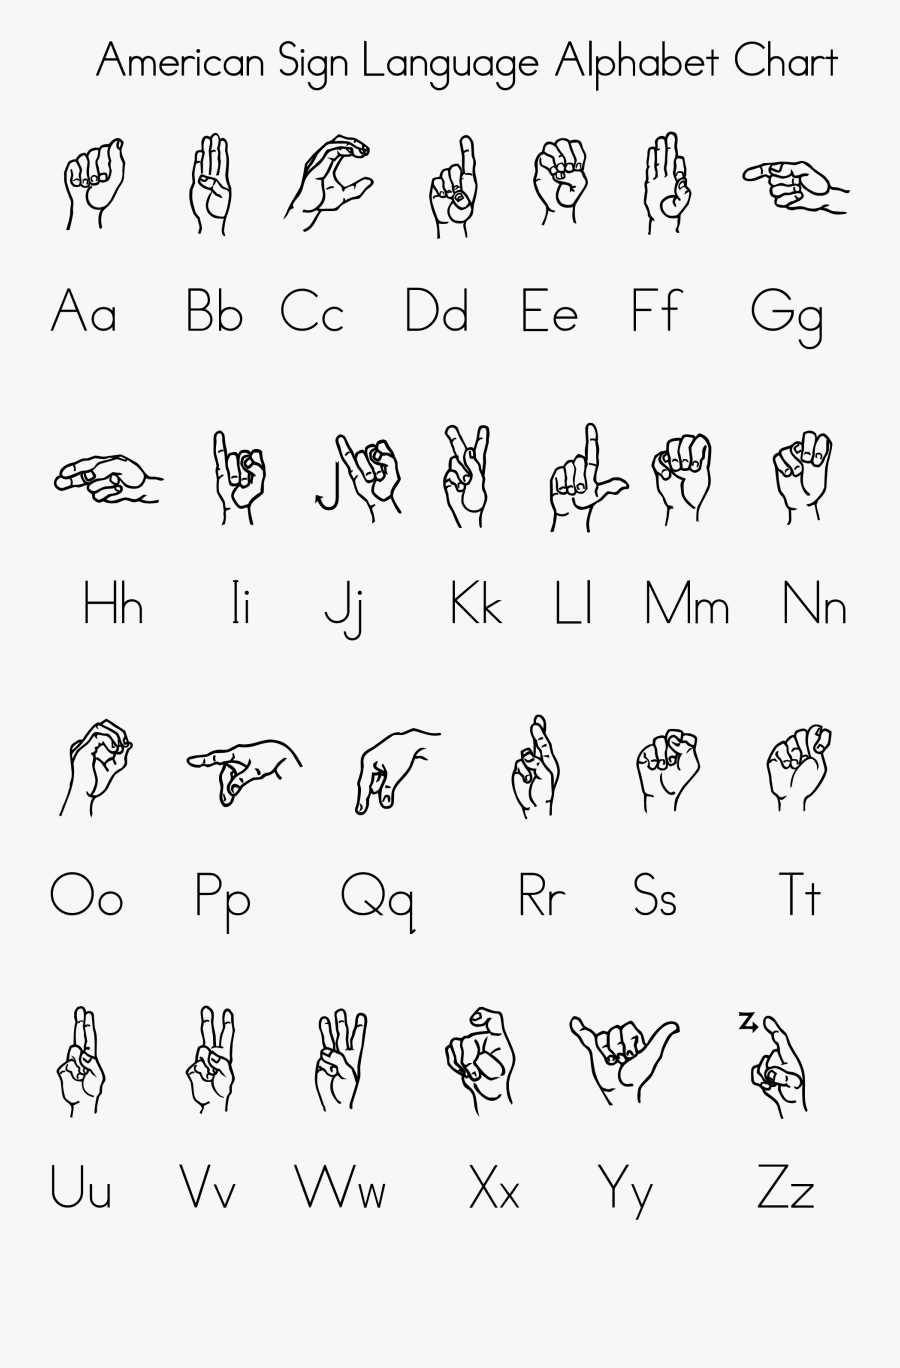 Ам язык. Американский язык жестов. Алфавит жестов. Что такое алфавит языка. Язык жестов американский алфавит.